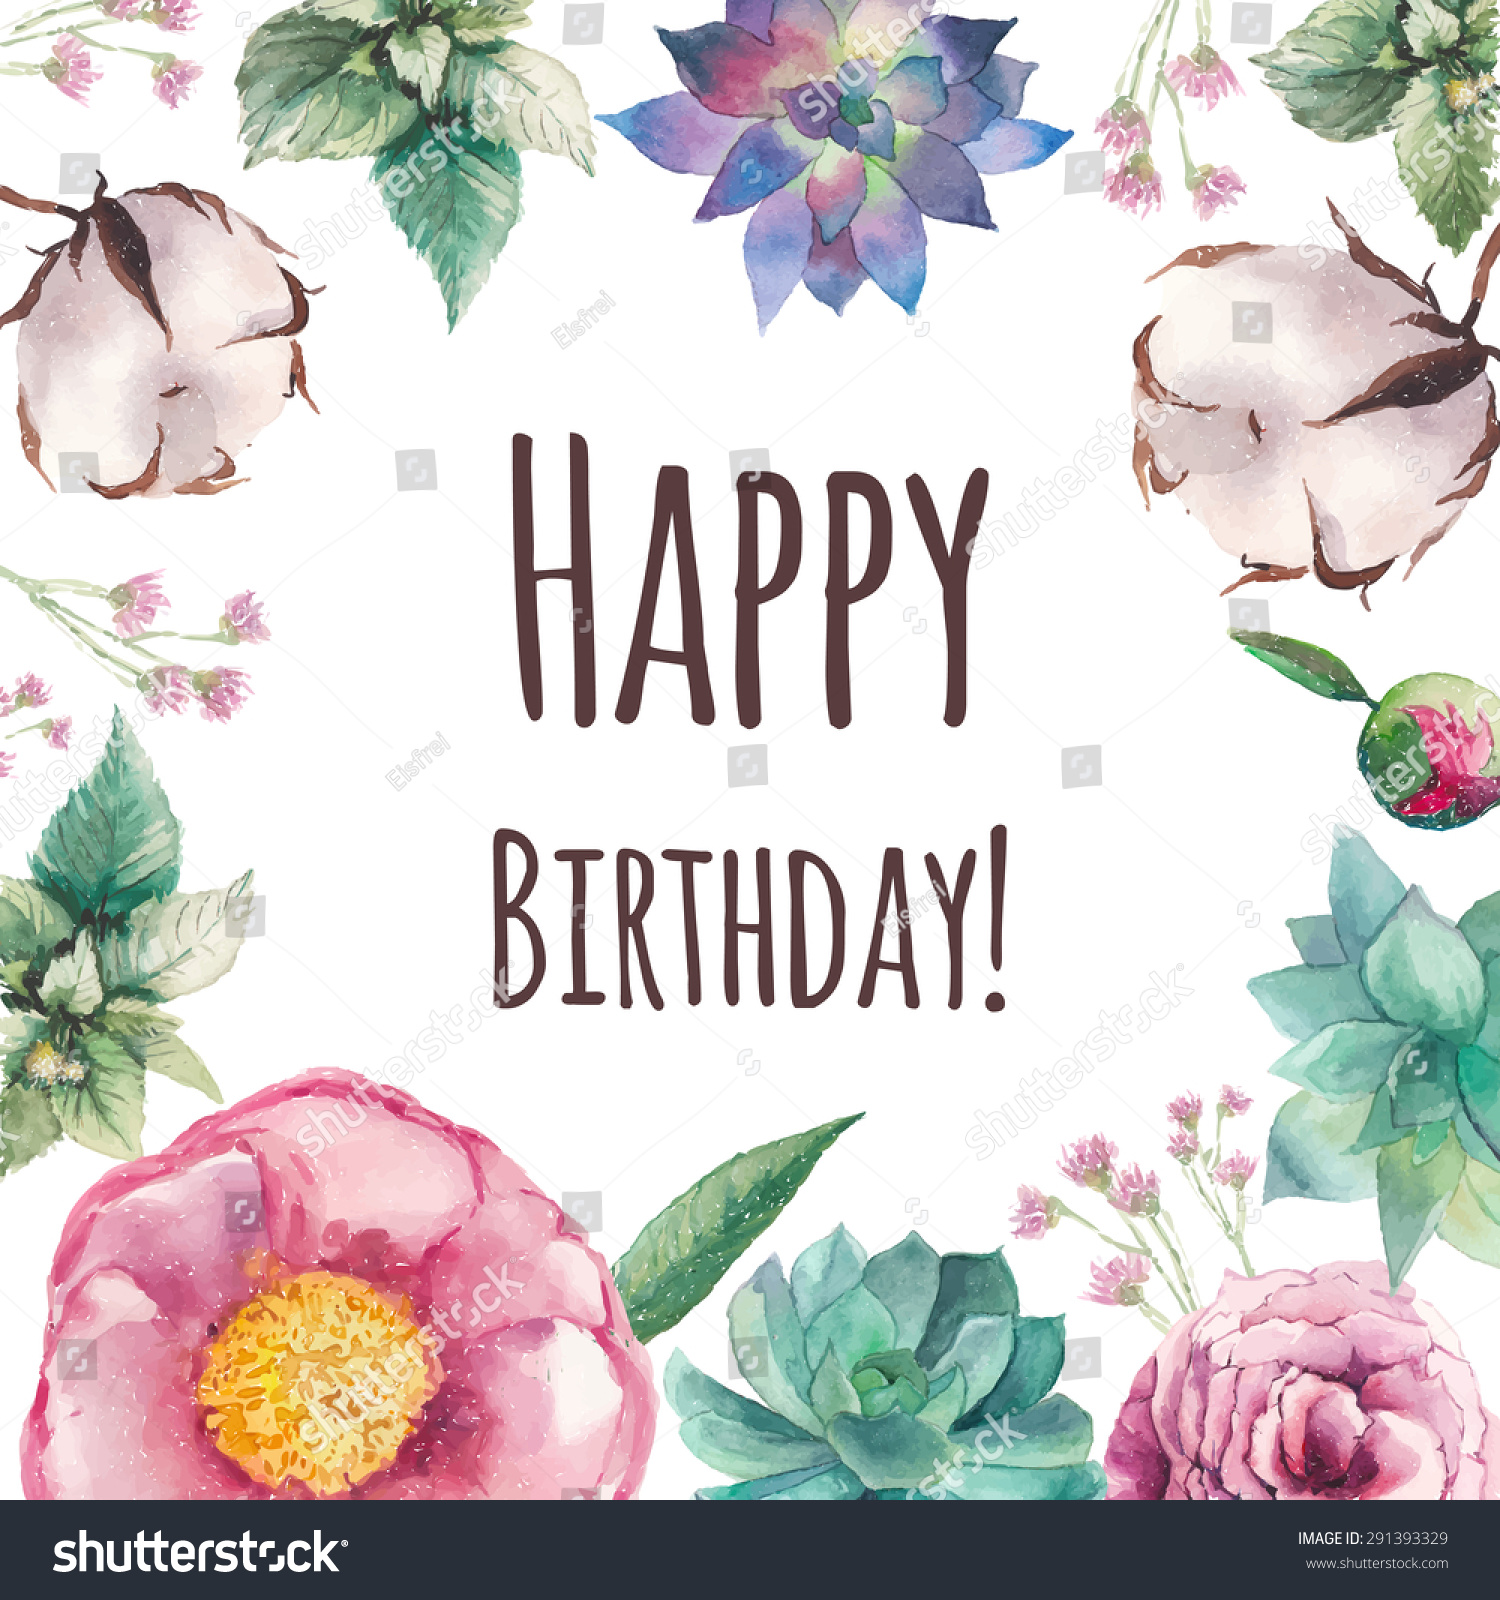 Watercolor Garden Floral Happy Birthday Card Stock Vector 291393329 ...